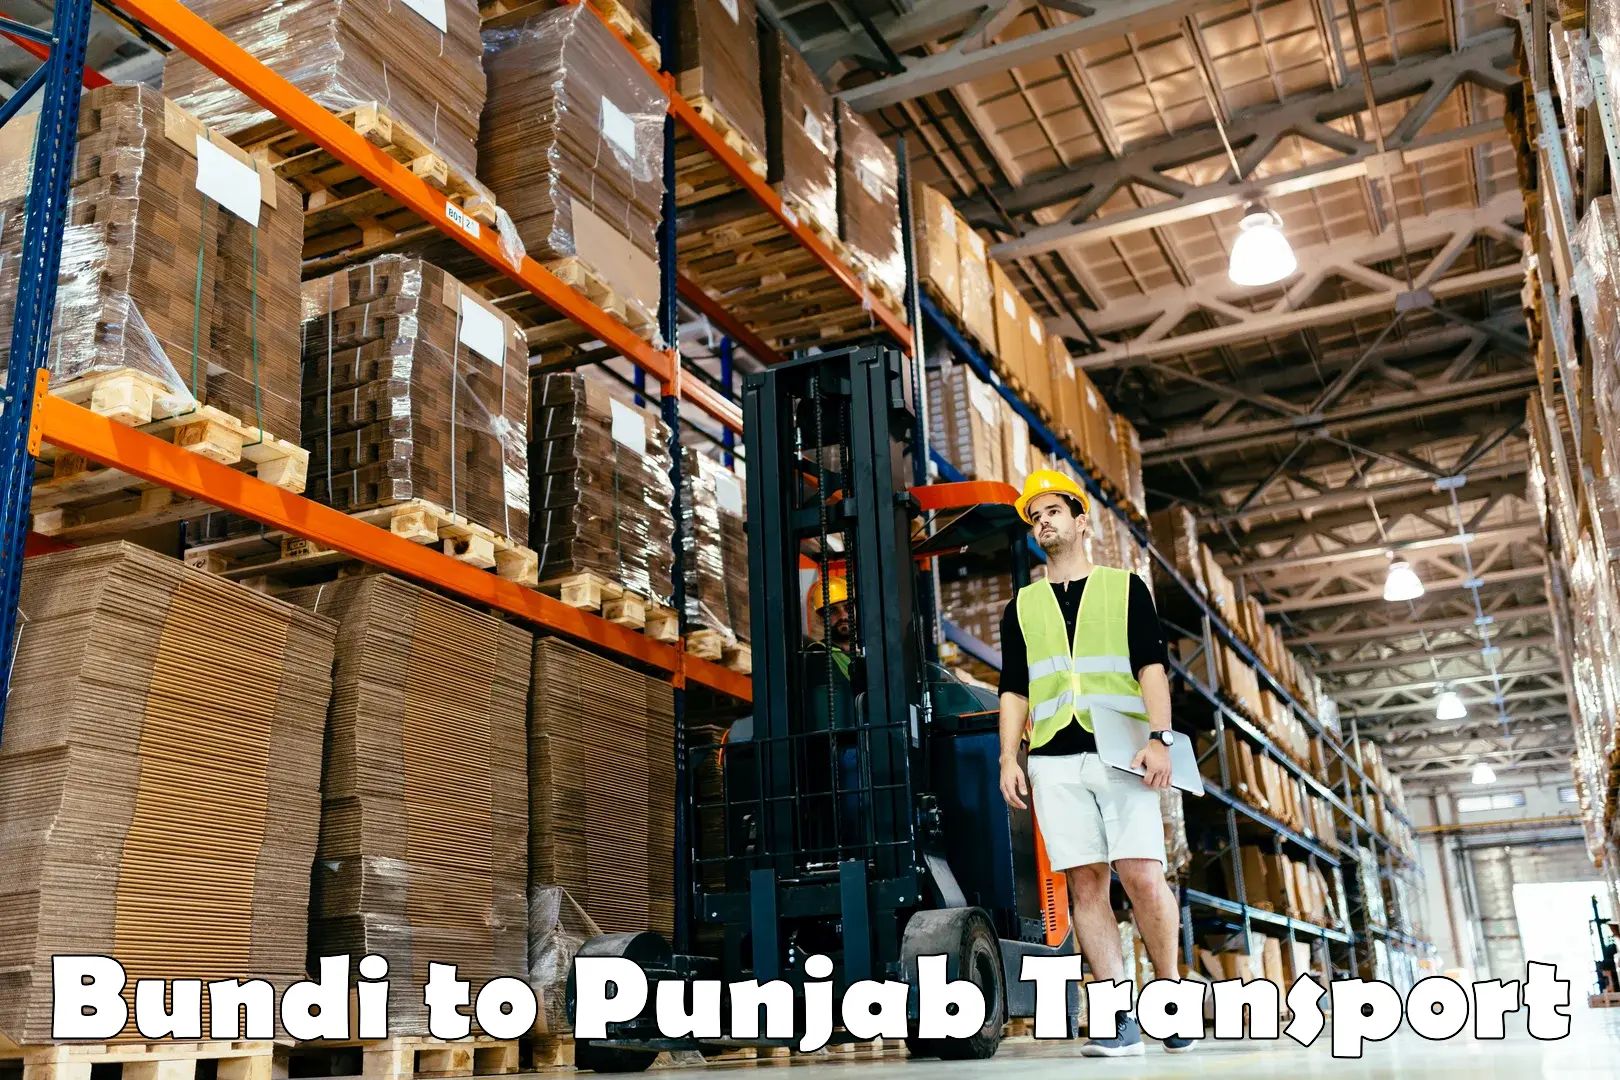 Bike shipping service Bundi to Punjab